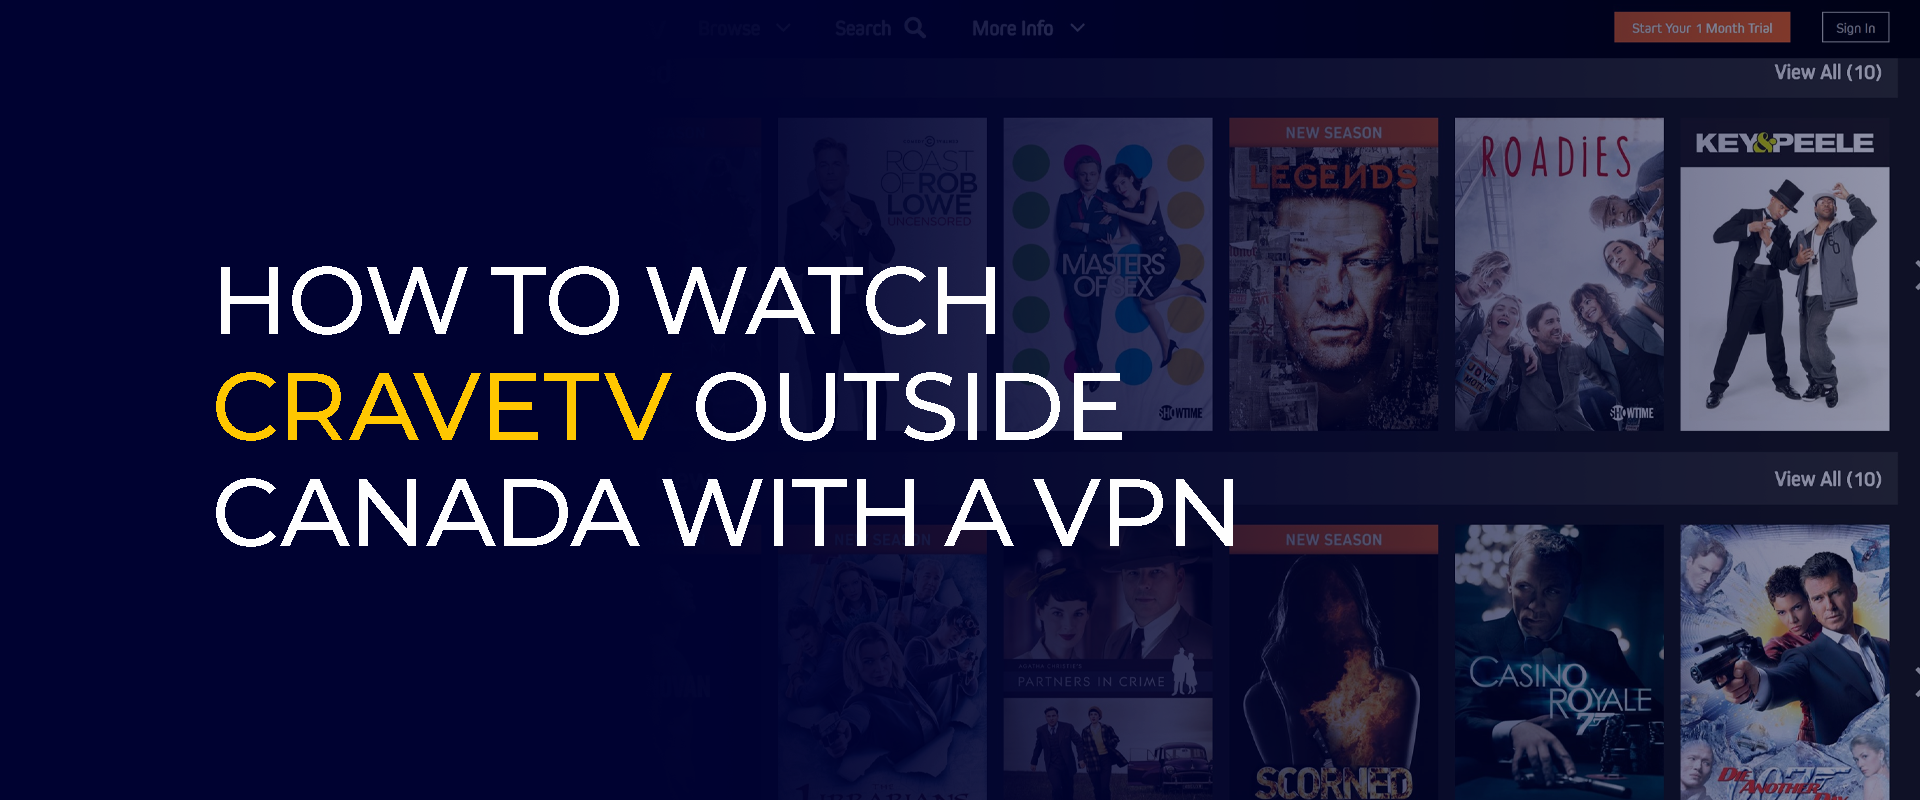 Cara Menonton CraveTV di Luar Kanada dengan VPN